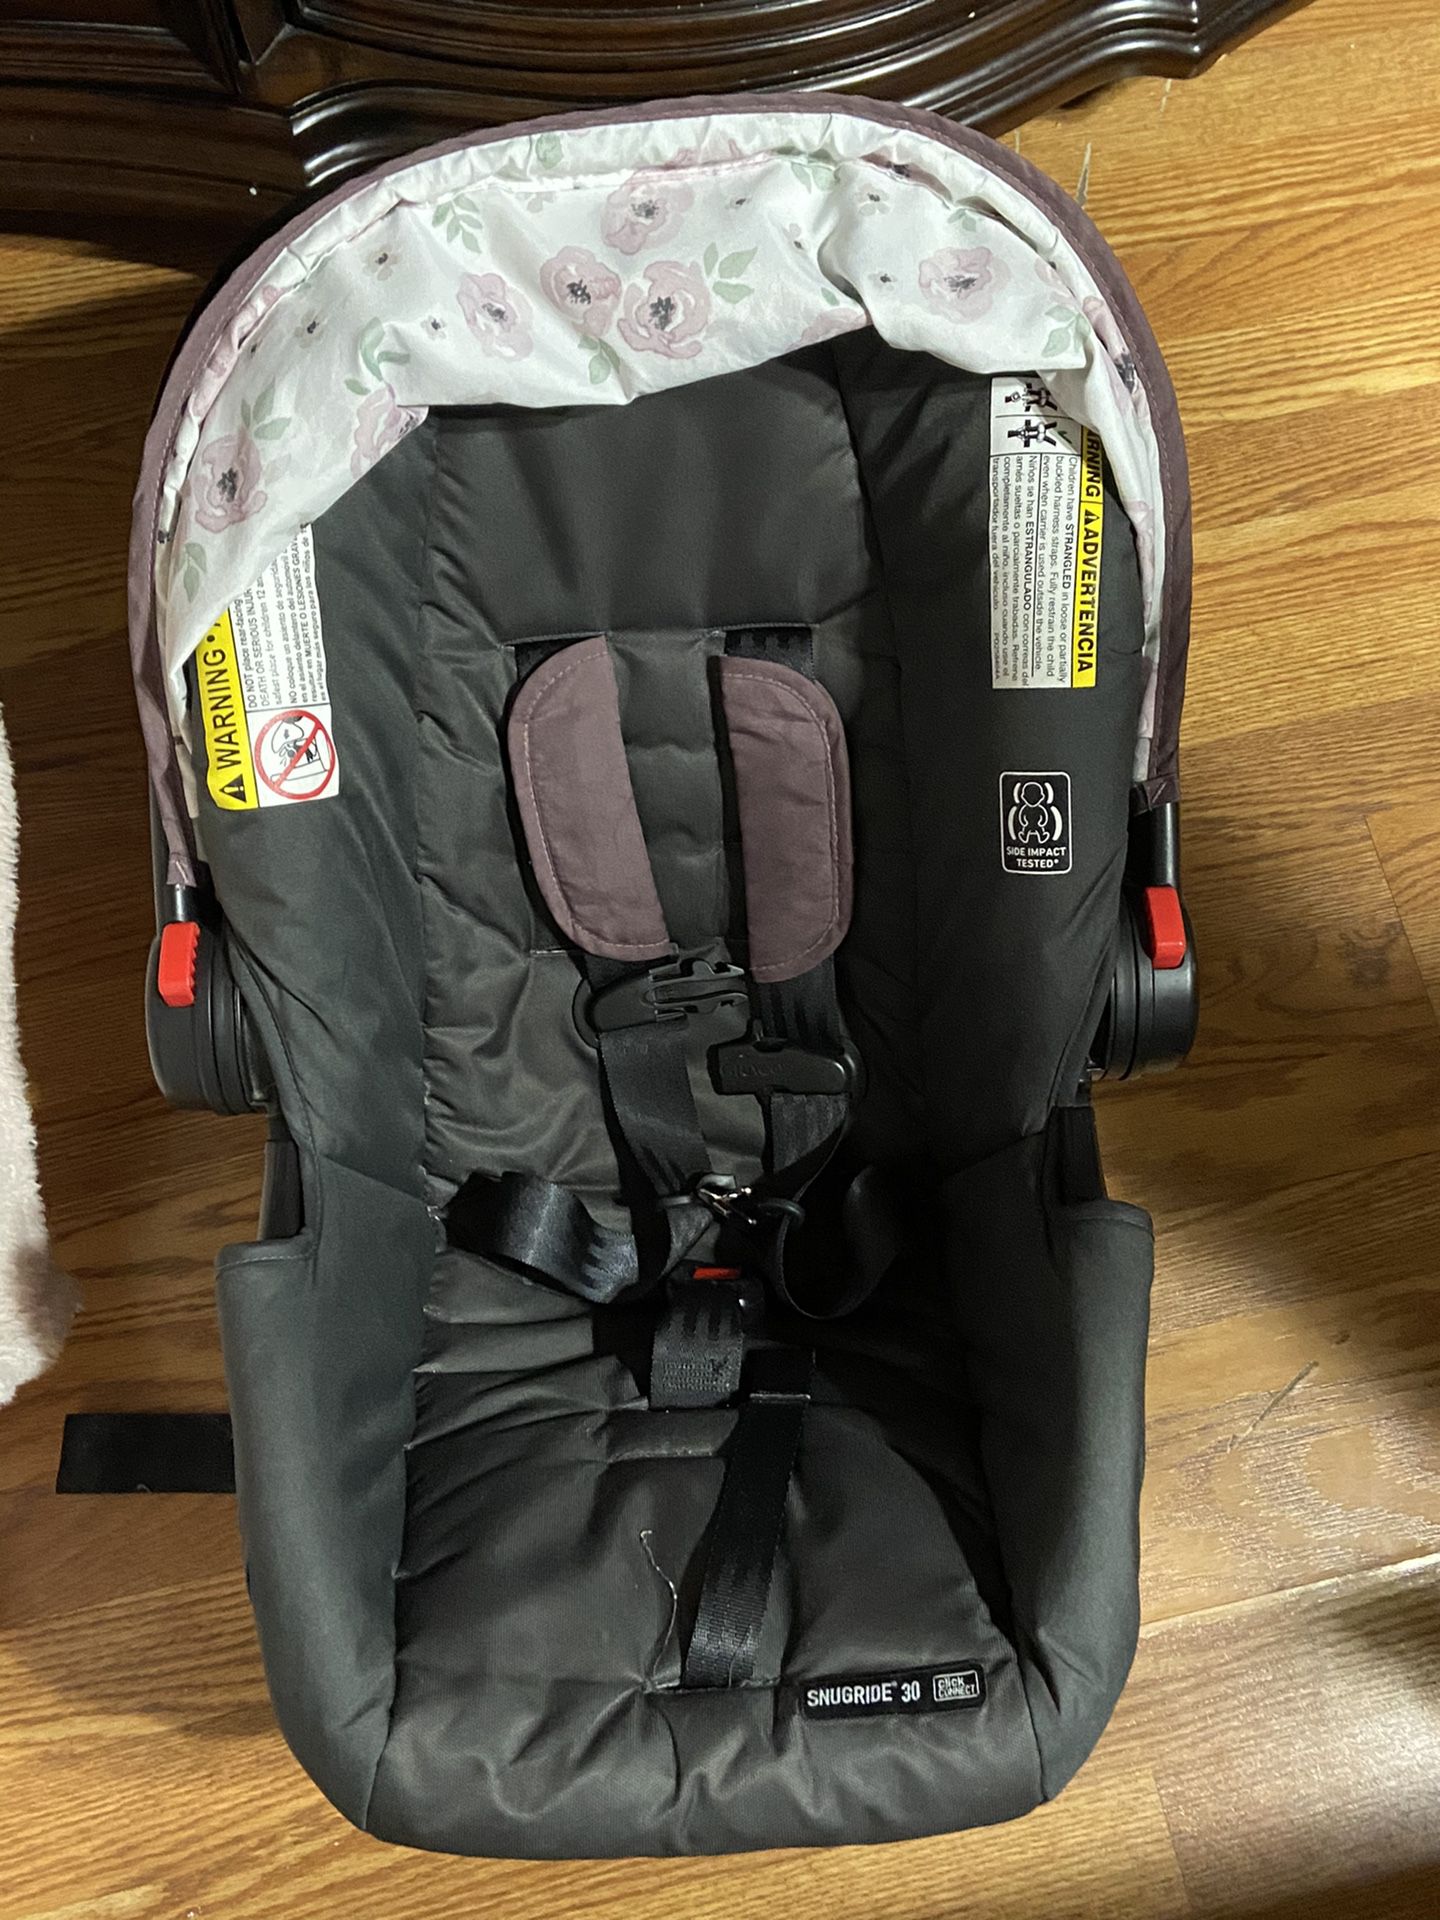 Grace stroller & car seat